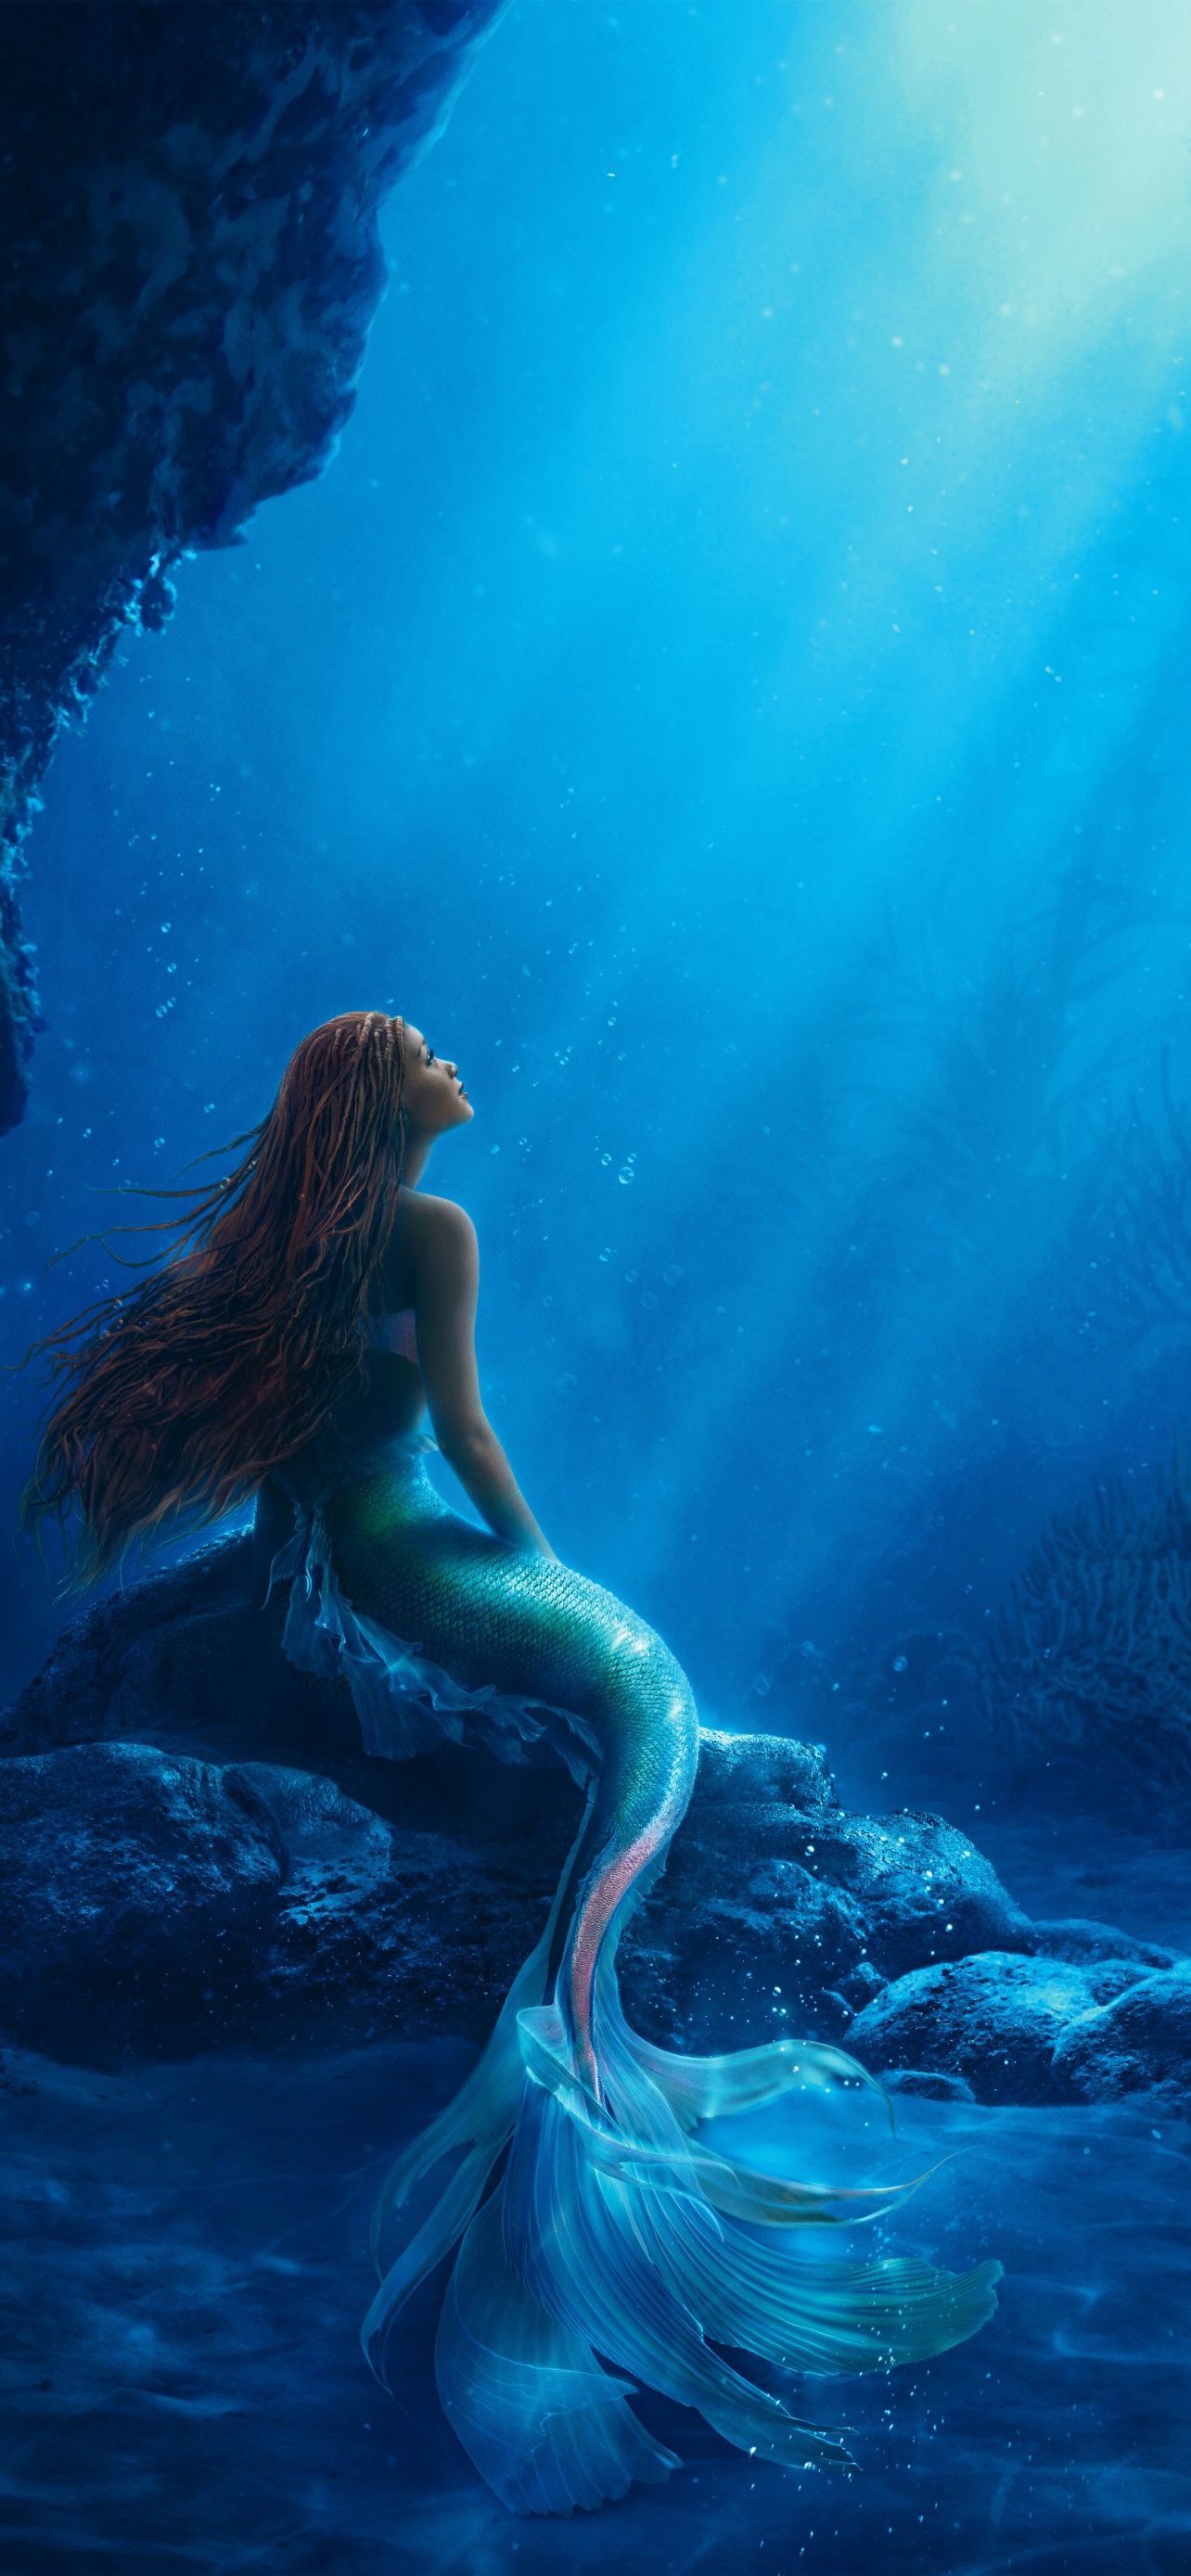 Mermaid in the sea, iPhone wallpaper - Mermaid